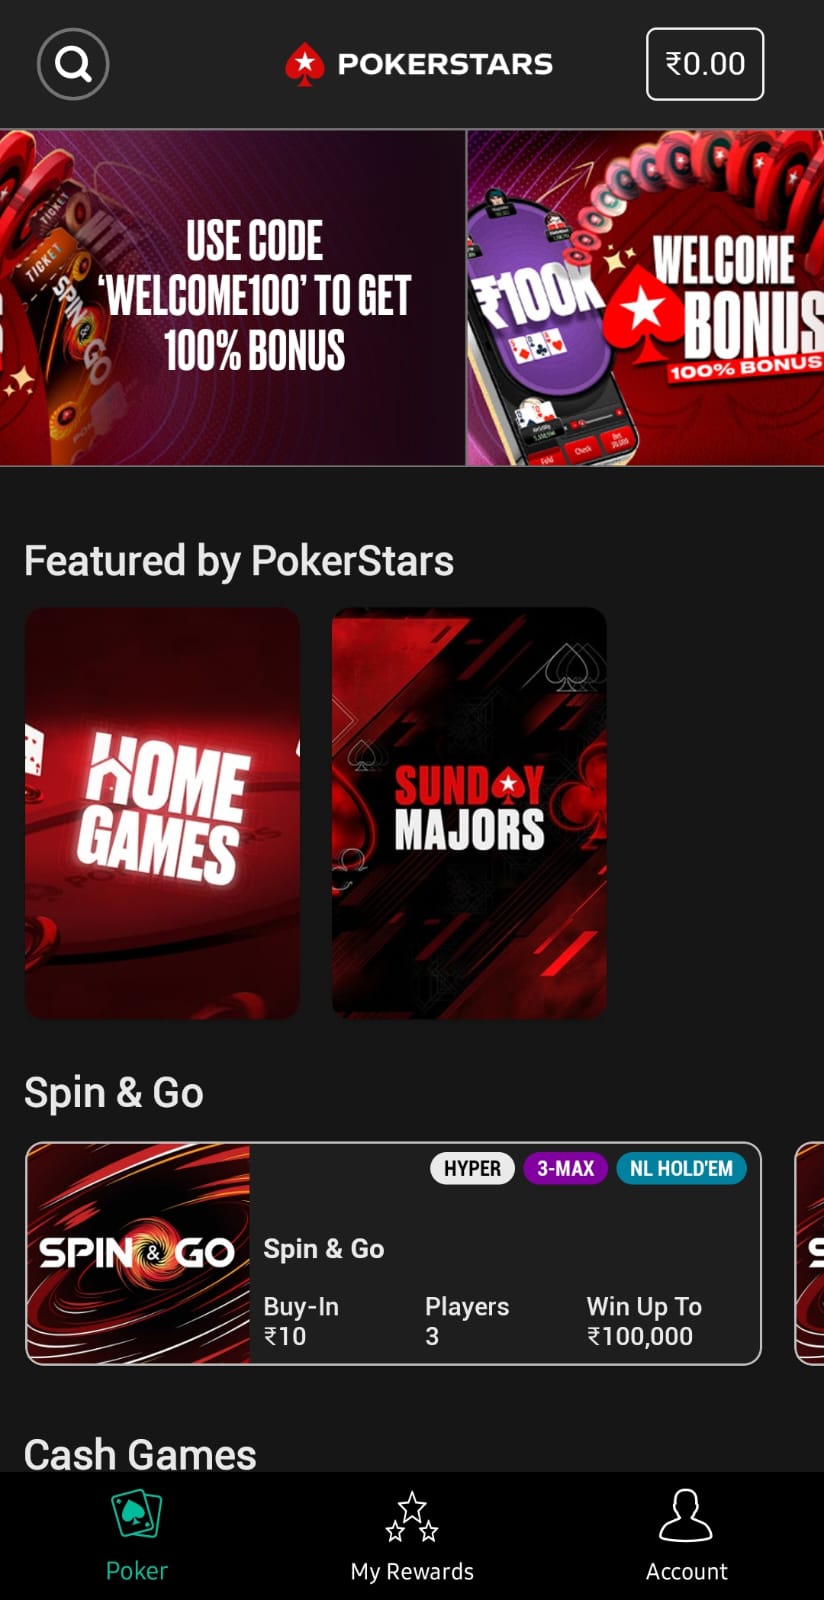 Best Android Poker App - PokerStars